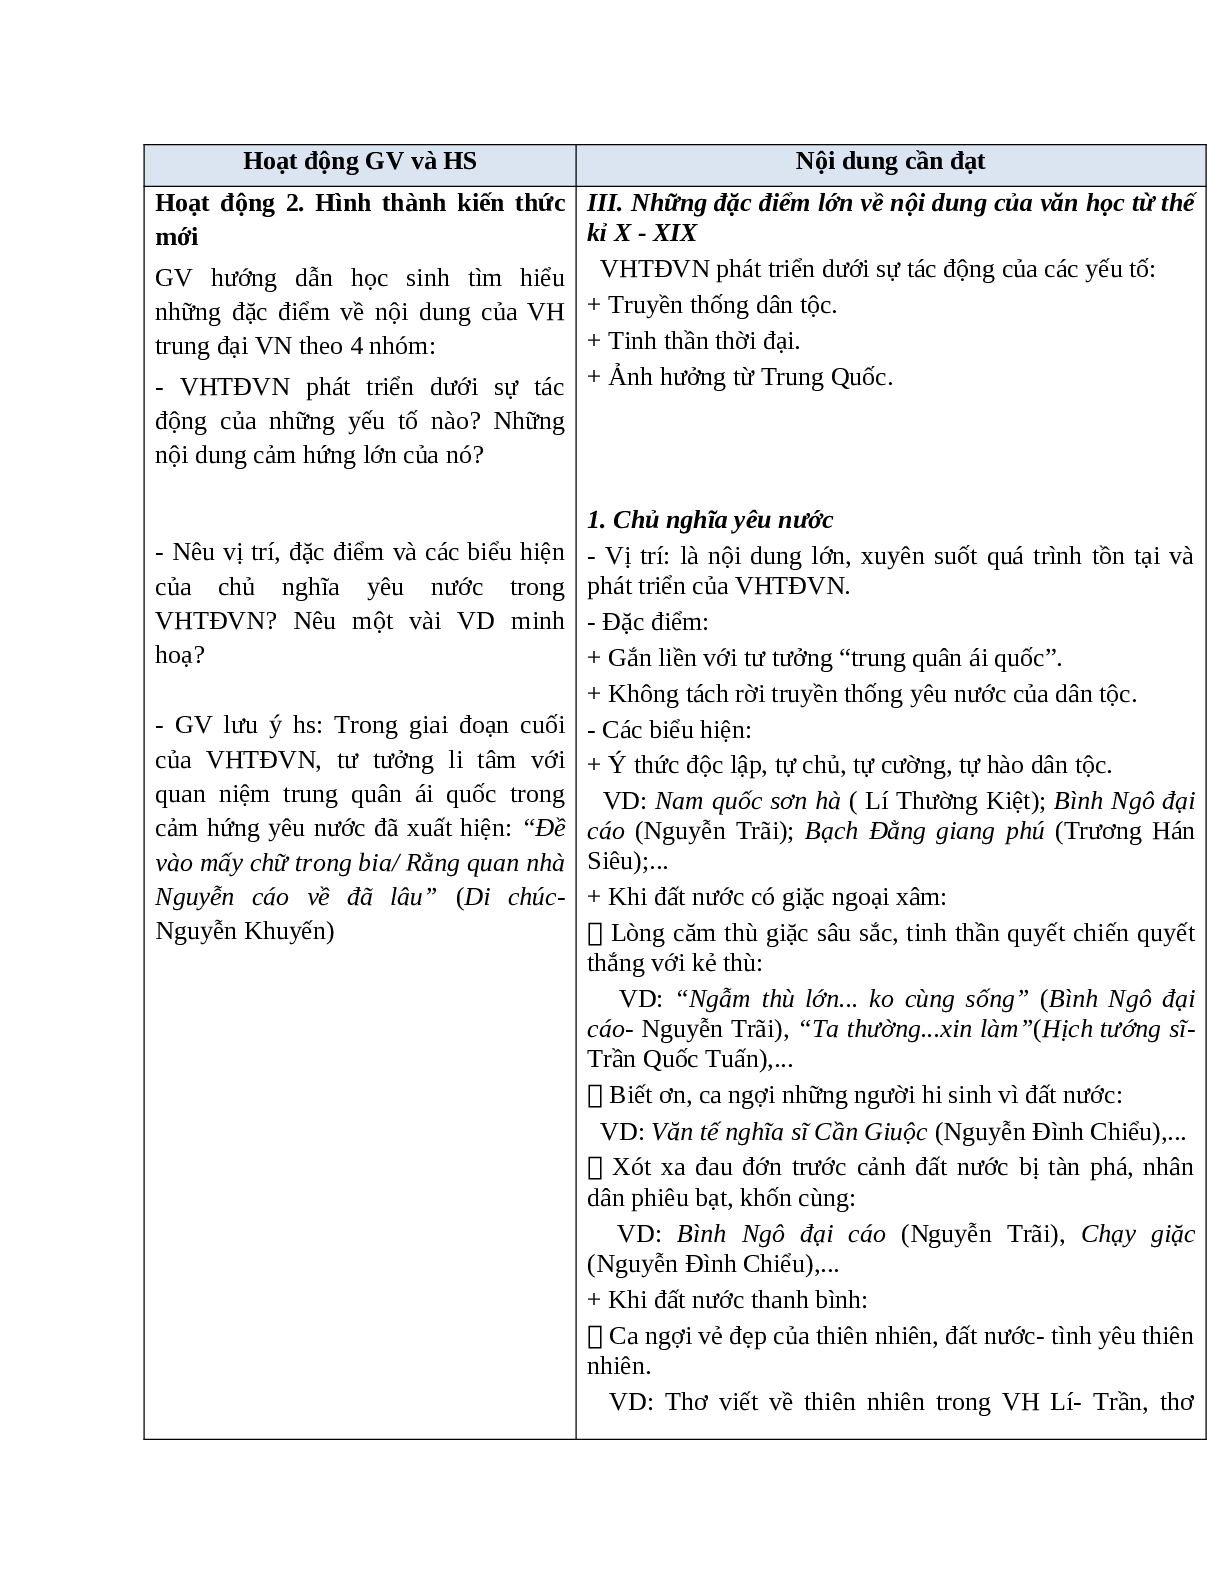 Giáo án Ngữ văn 10 tập 1 bài Khái quát văn học Việt Nam từ thế kỉ X đến hết thế kỉ XIX (tiết 2) mới nhất (trang 3)